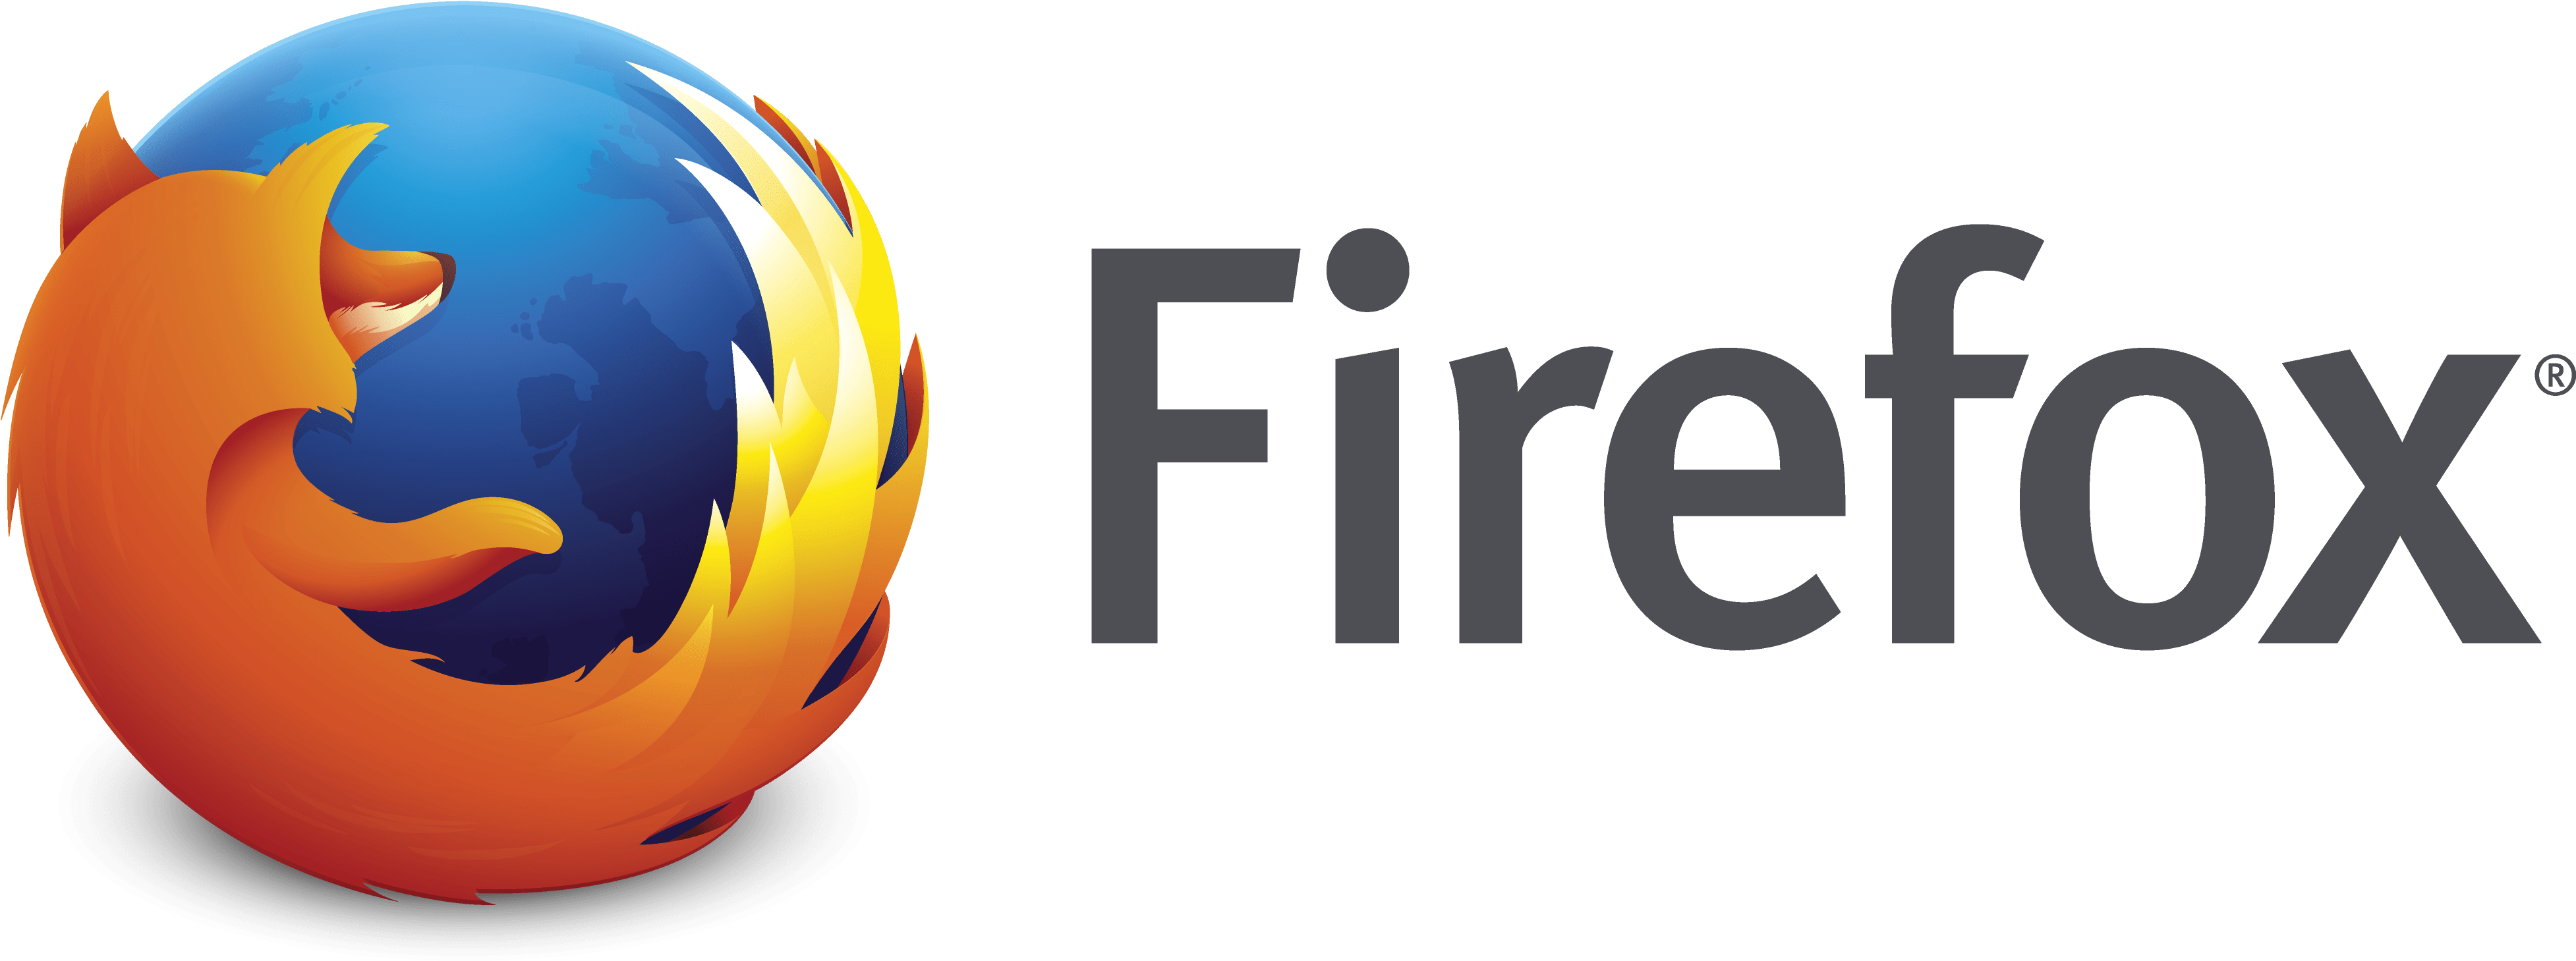 A Logo Of A Fire